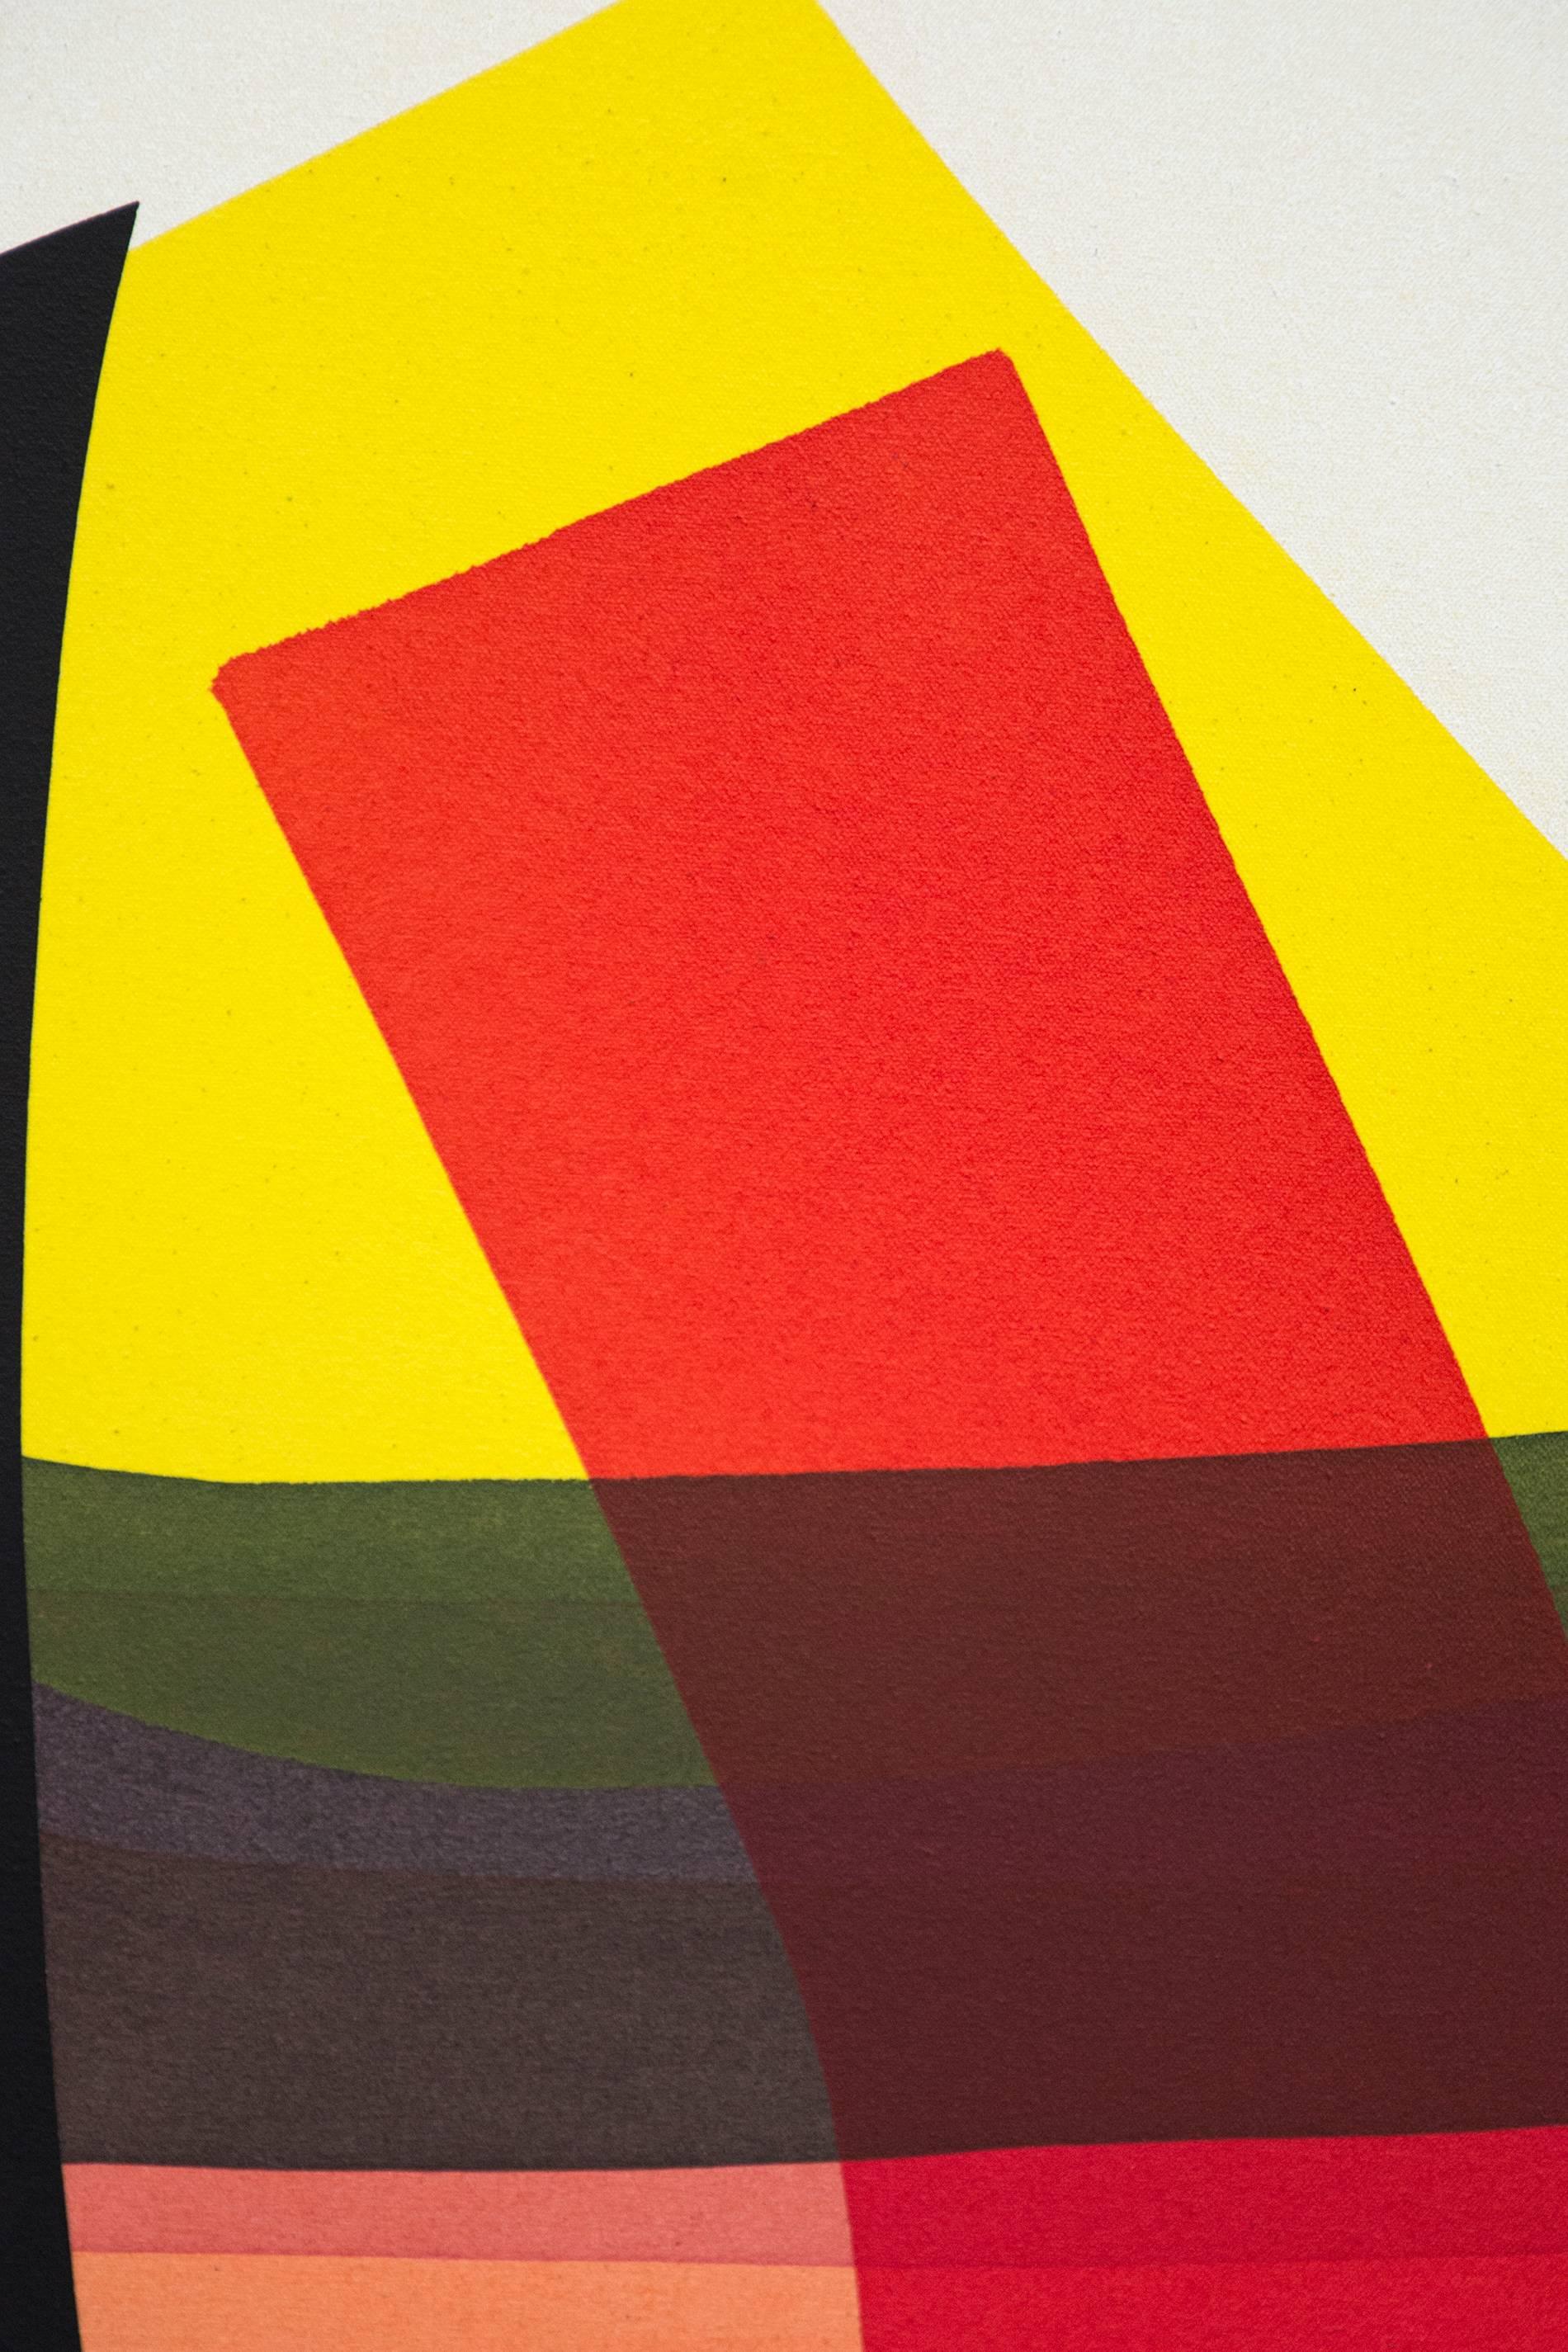 Une arche noire saisissante attire le spectateur dans un monde de couleurs vives dans cette composition abstraite d'Aron Hill. Des lavis d'encre acrylique pure en rouge, orange pâle, vert, jaune vif, vert pâle et gris s'entrecroisent avec un blanc